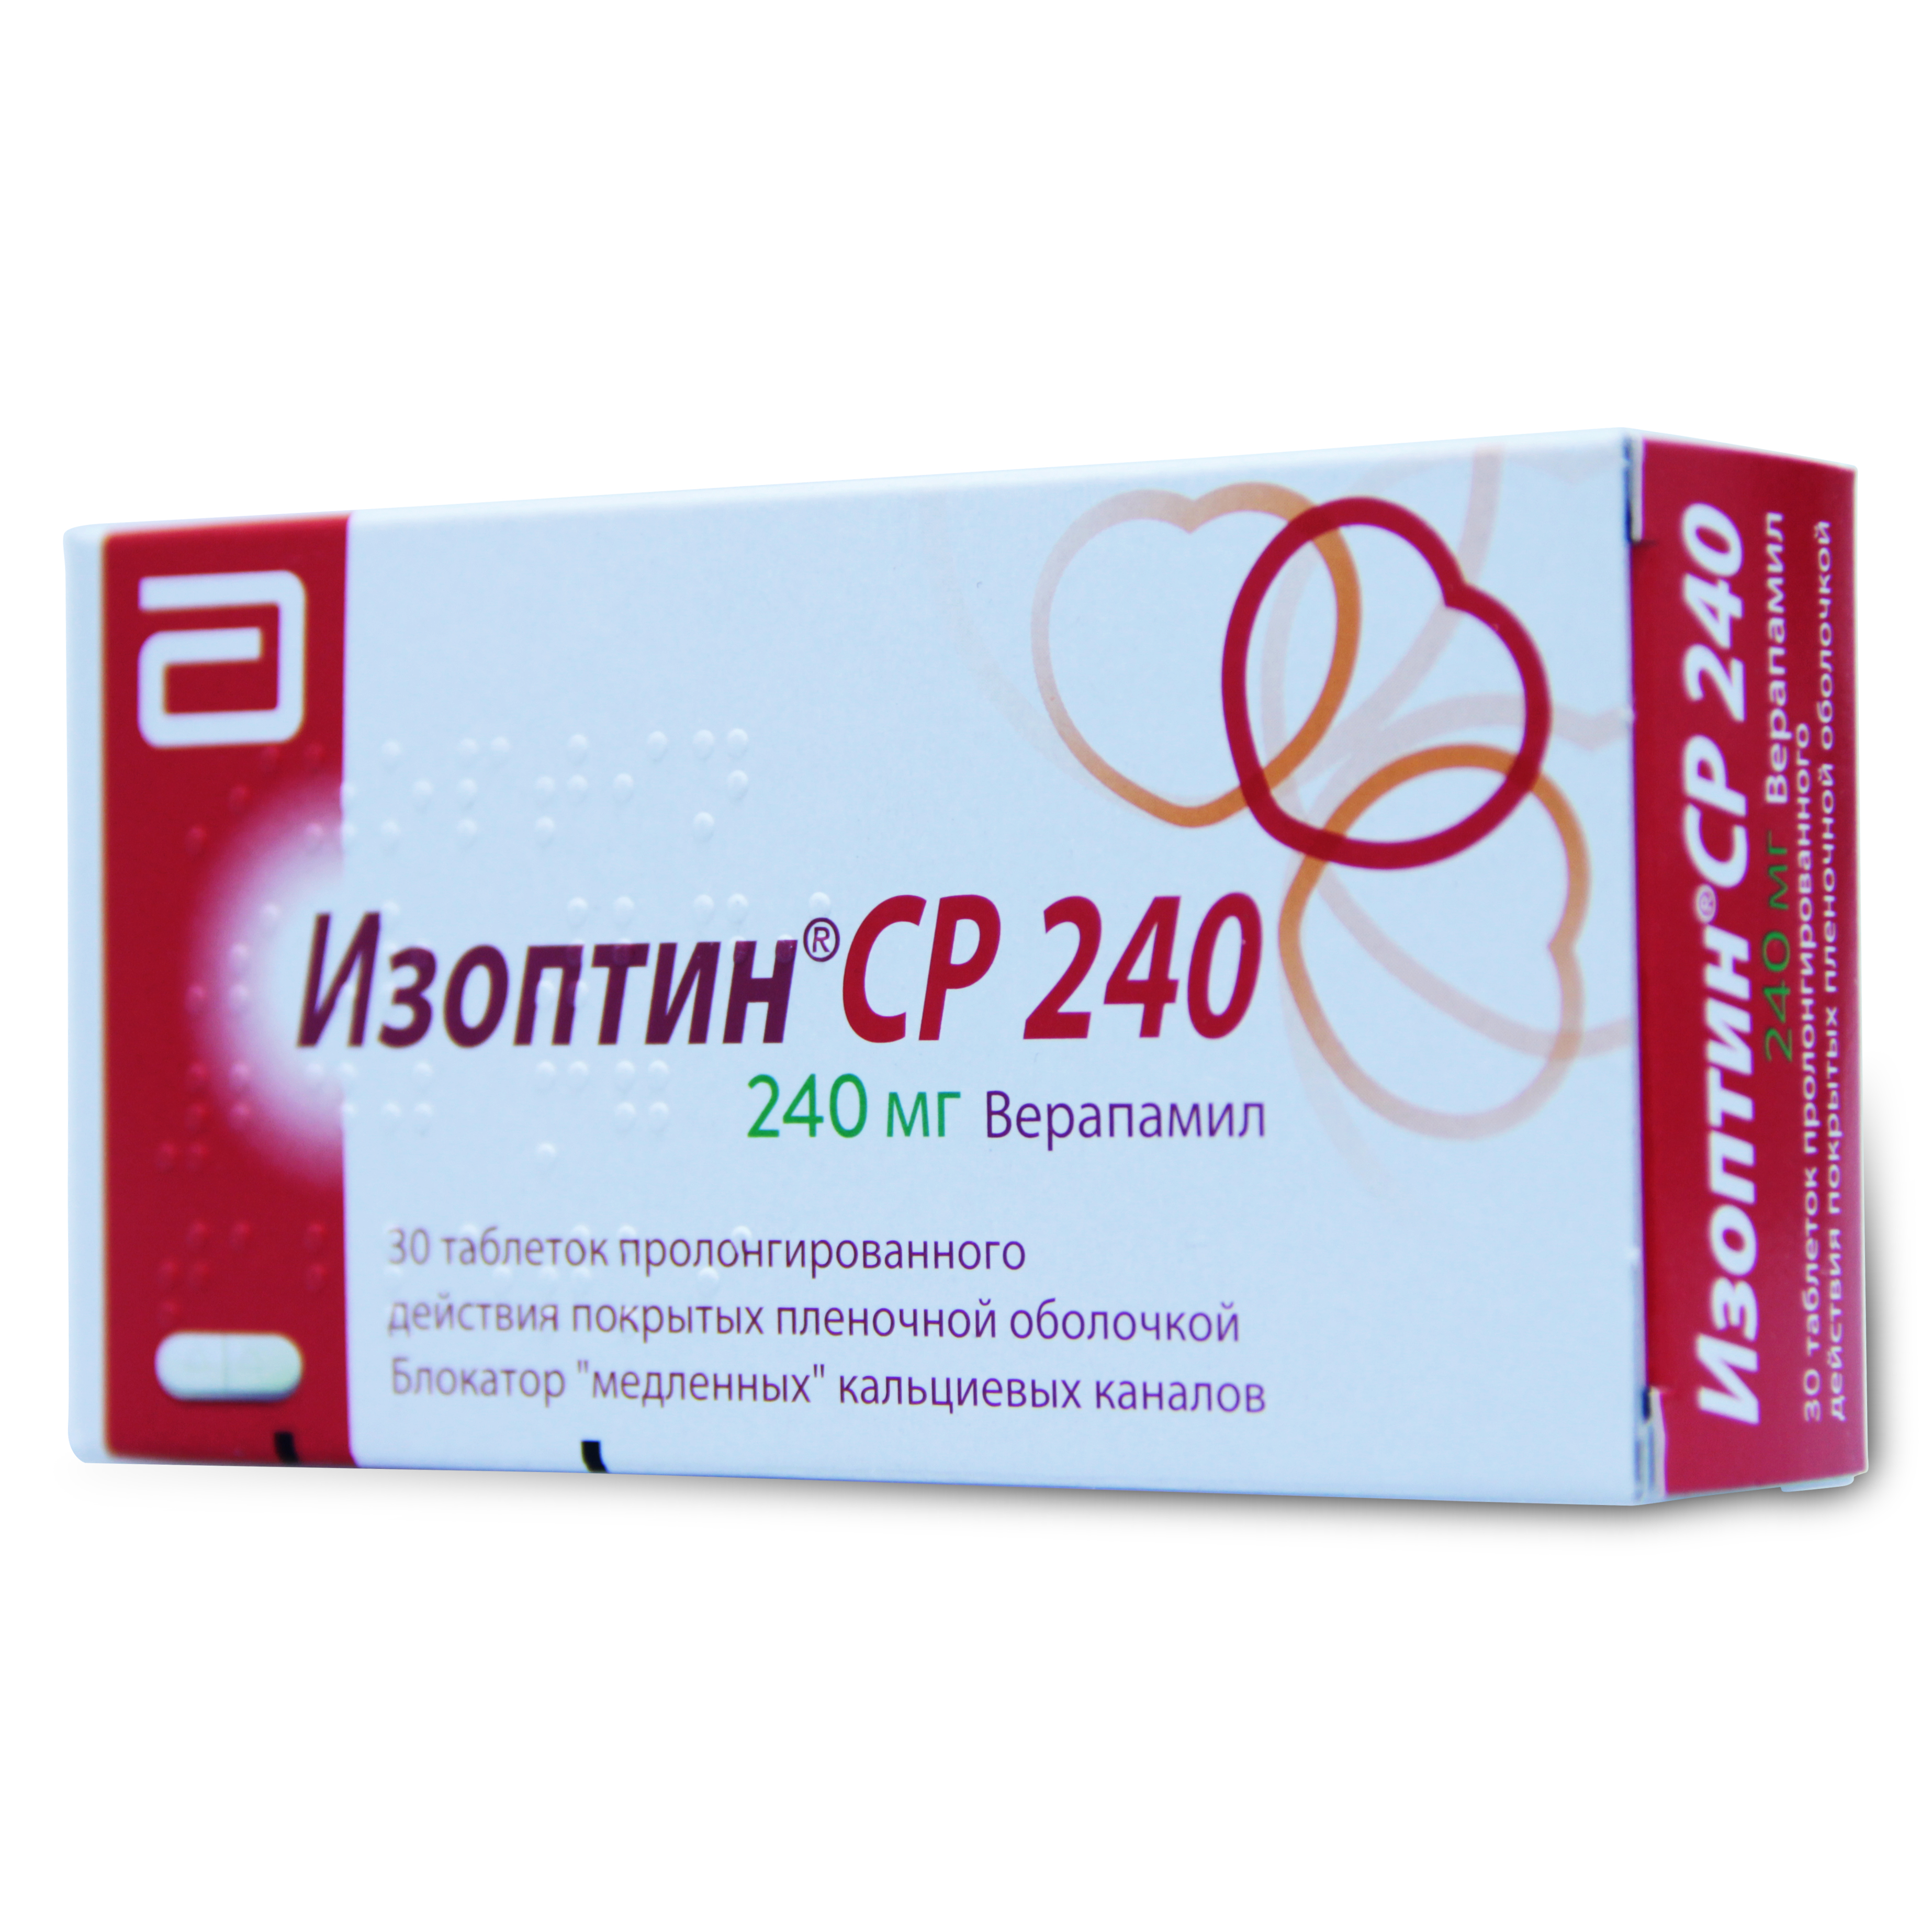 Изоптин СР таблетки пролонгированного действия покрытые пленочной оболочкой 240 мг 30 шт.